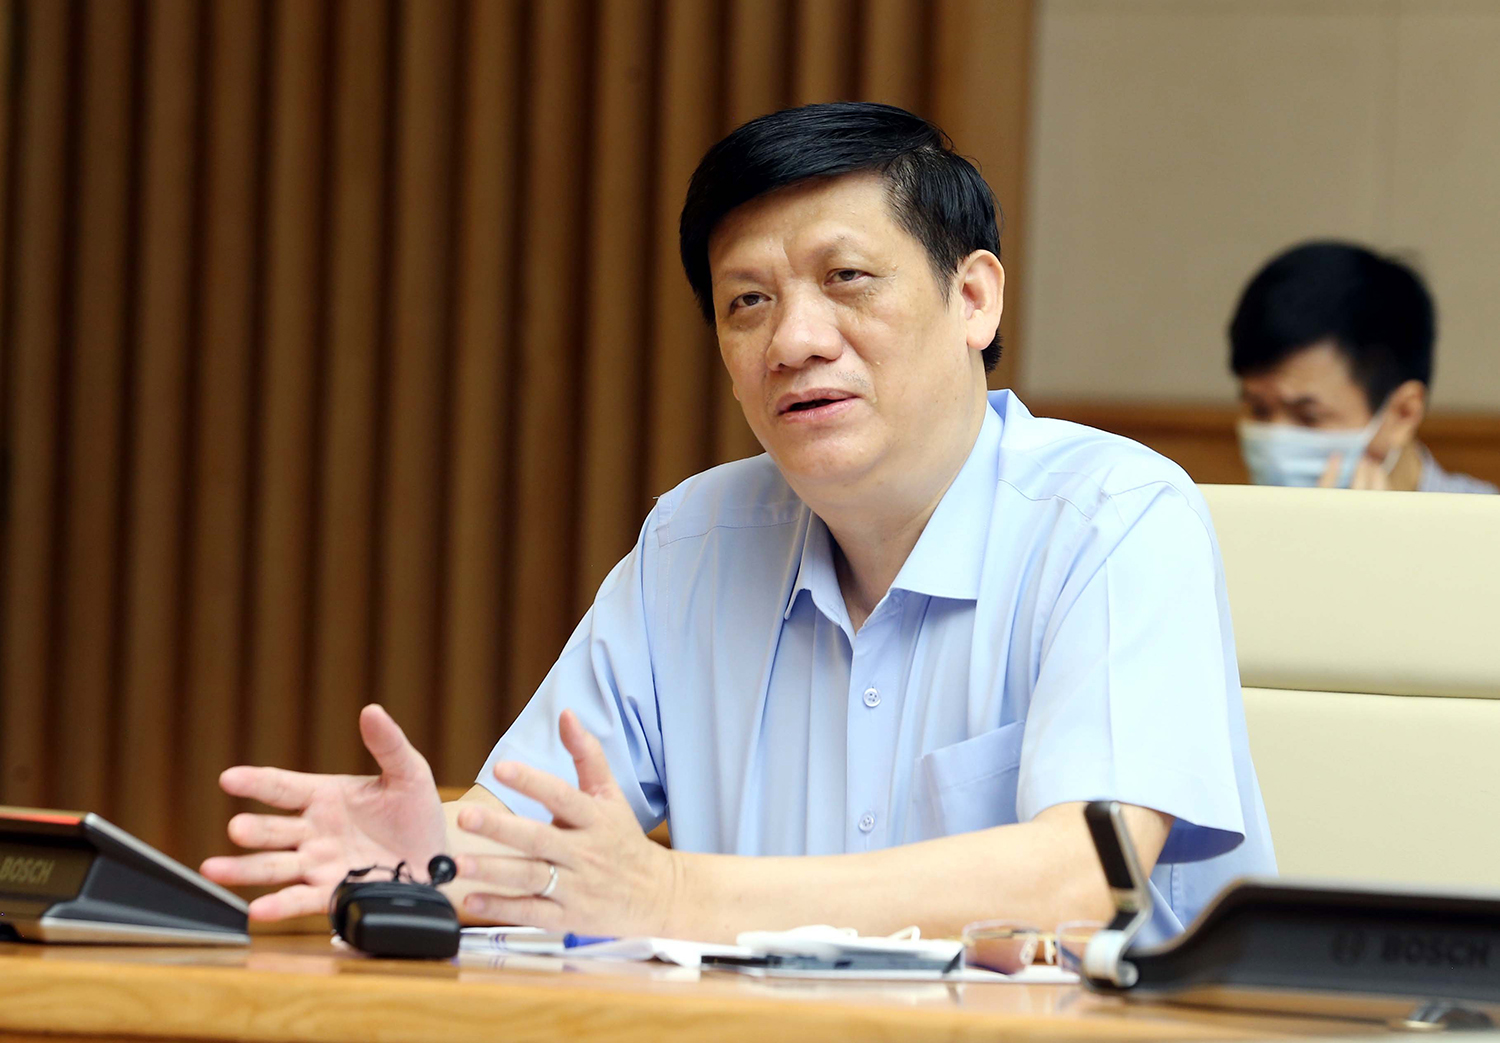 Bộ trưởng Bộ Y tế Nguyễn Thanh Long cho biết, ngành y tế đang tích cực chuẩn bị vật tư, trang thiết bị chống dịch, không để bị động trong mọi tình huống. Ảnh: VGP/Đình Nam